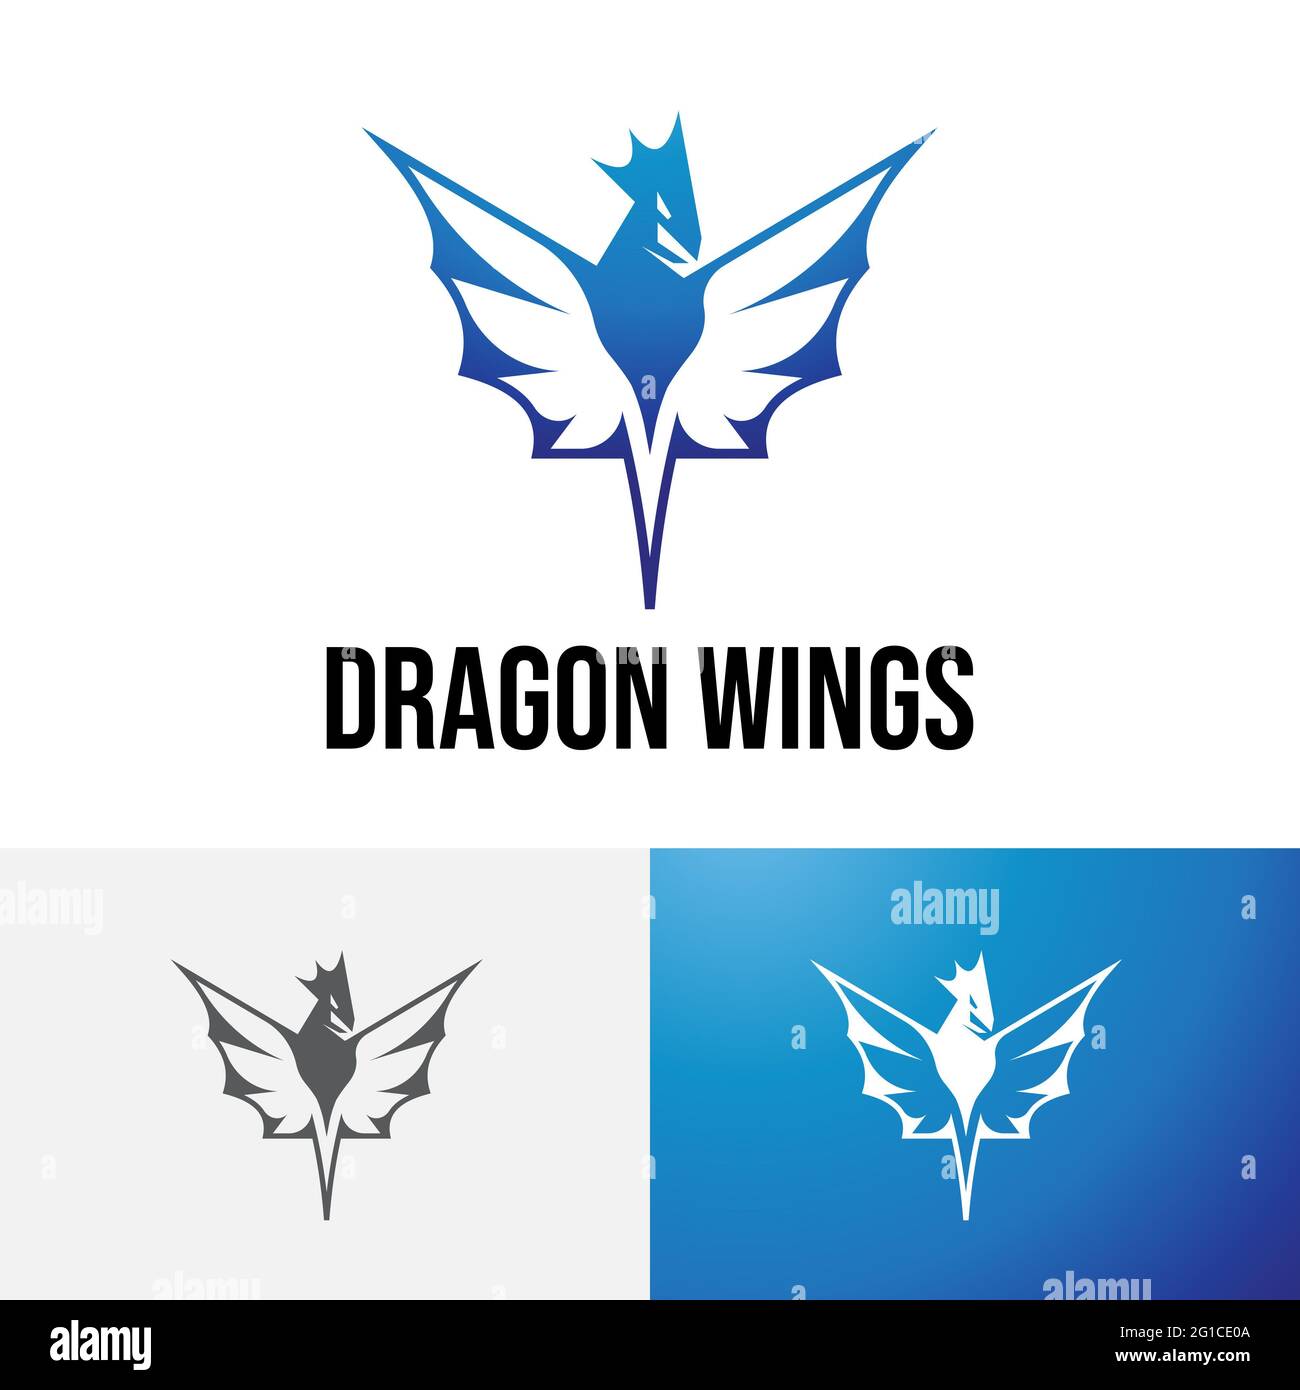 Diseño del logotipo de vuelo de las alas grandes del dragón azul Foto de stock